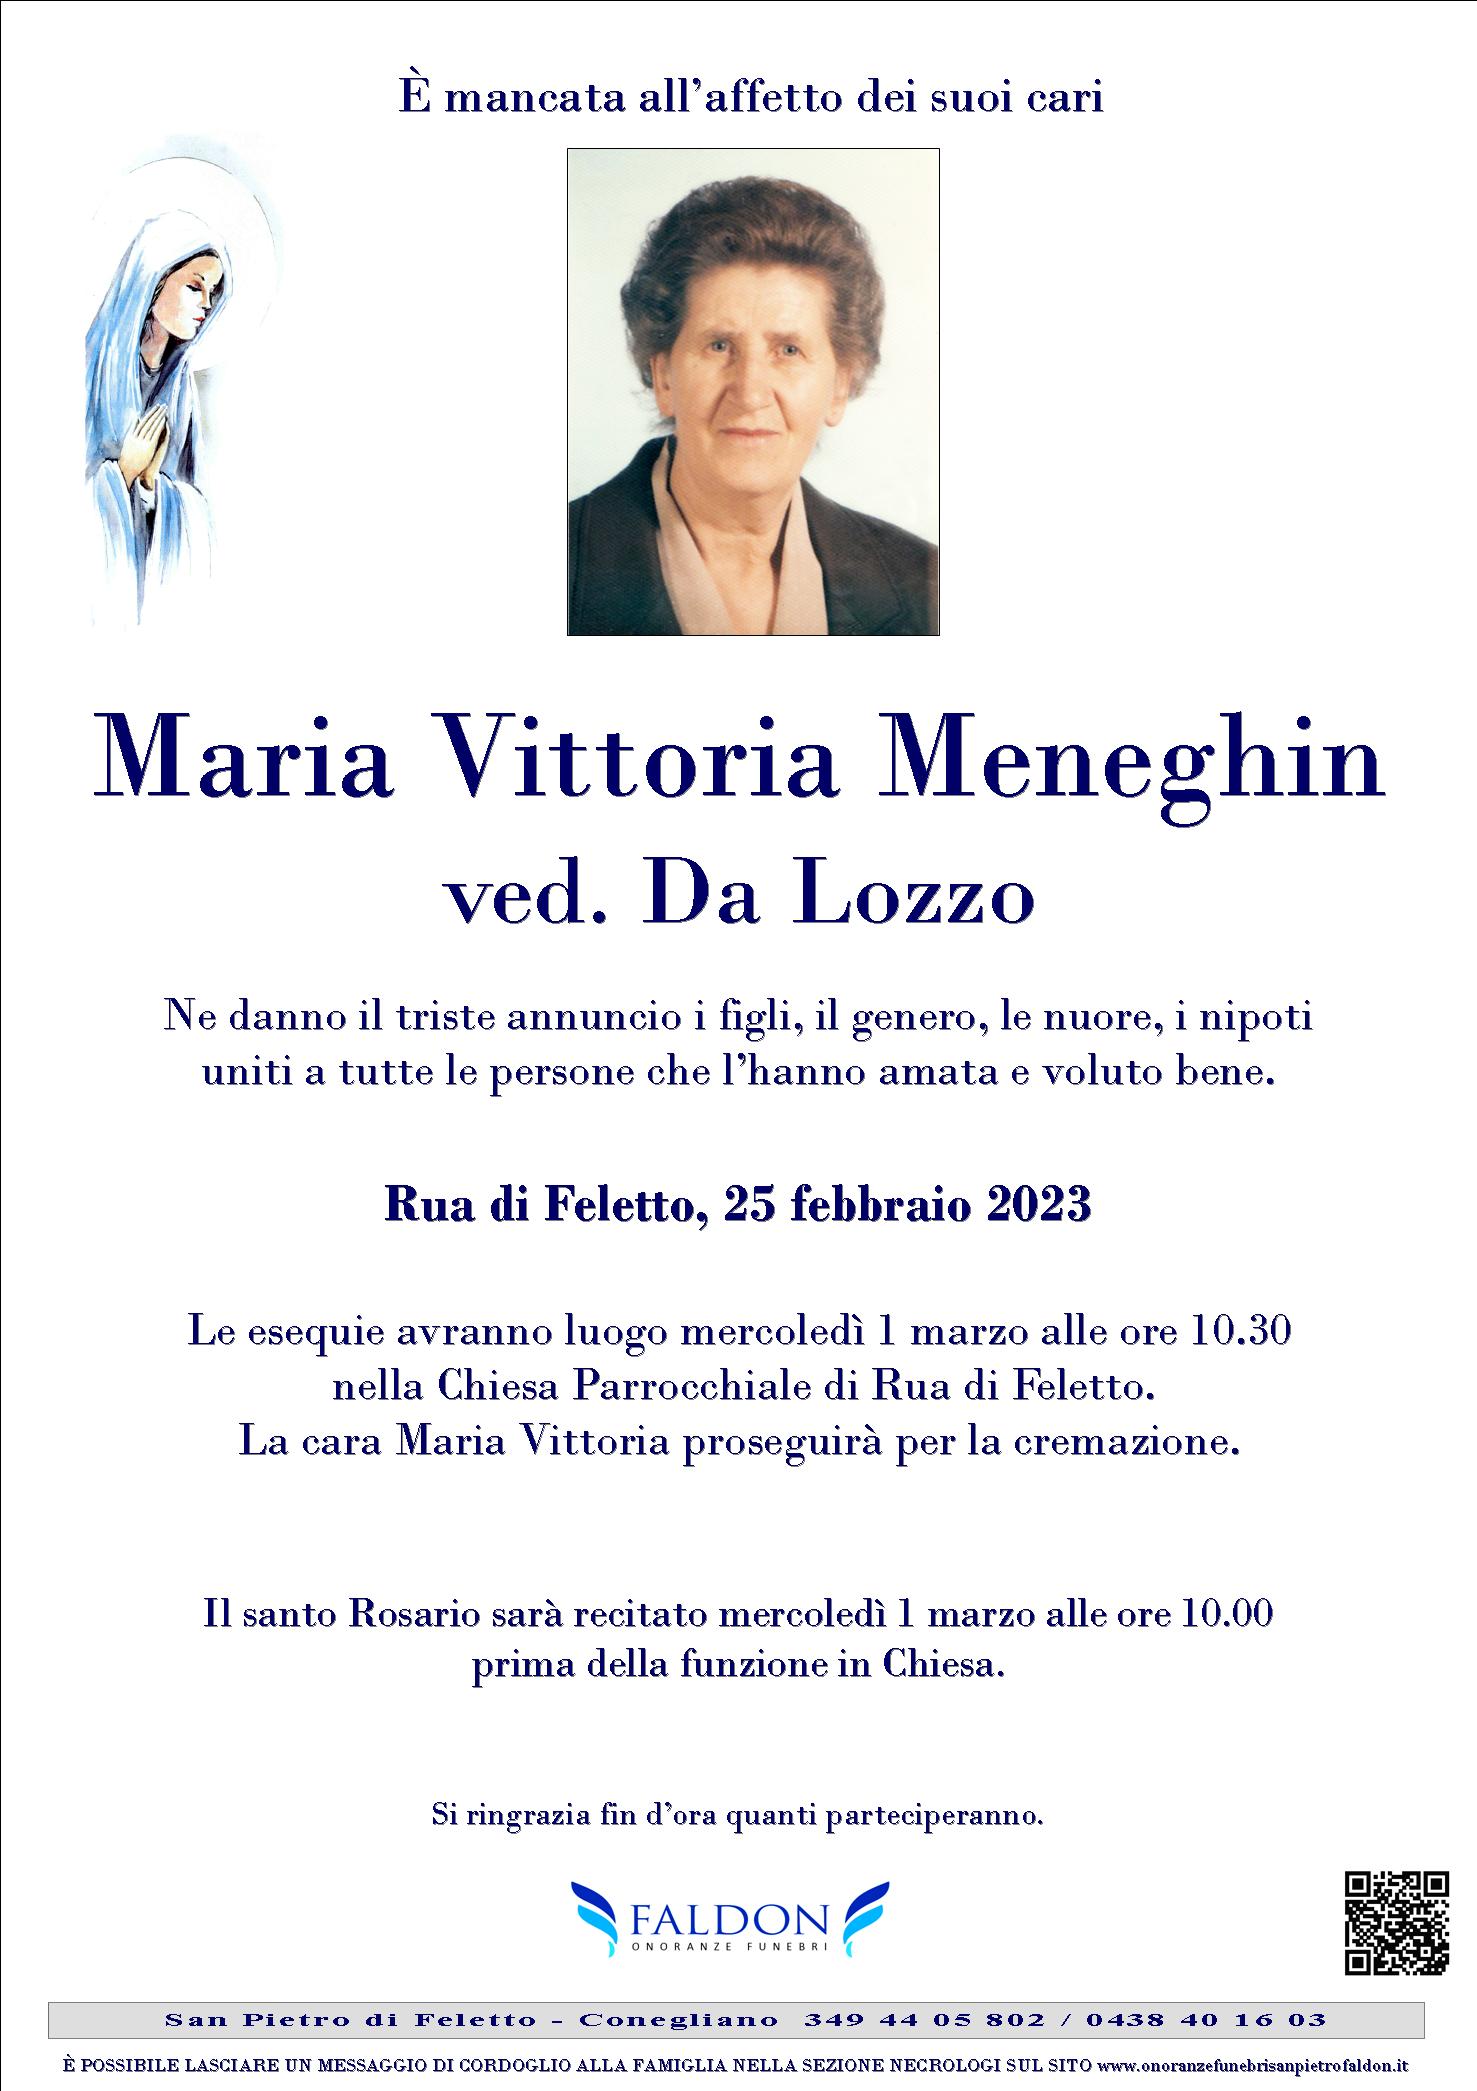 Maria Vittoria Meneghin